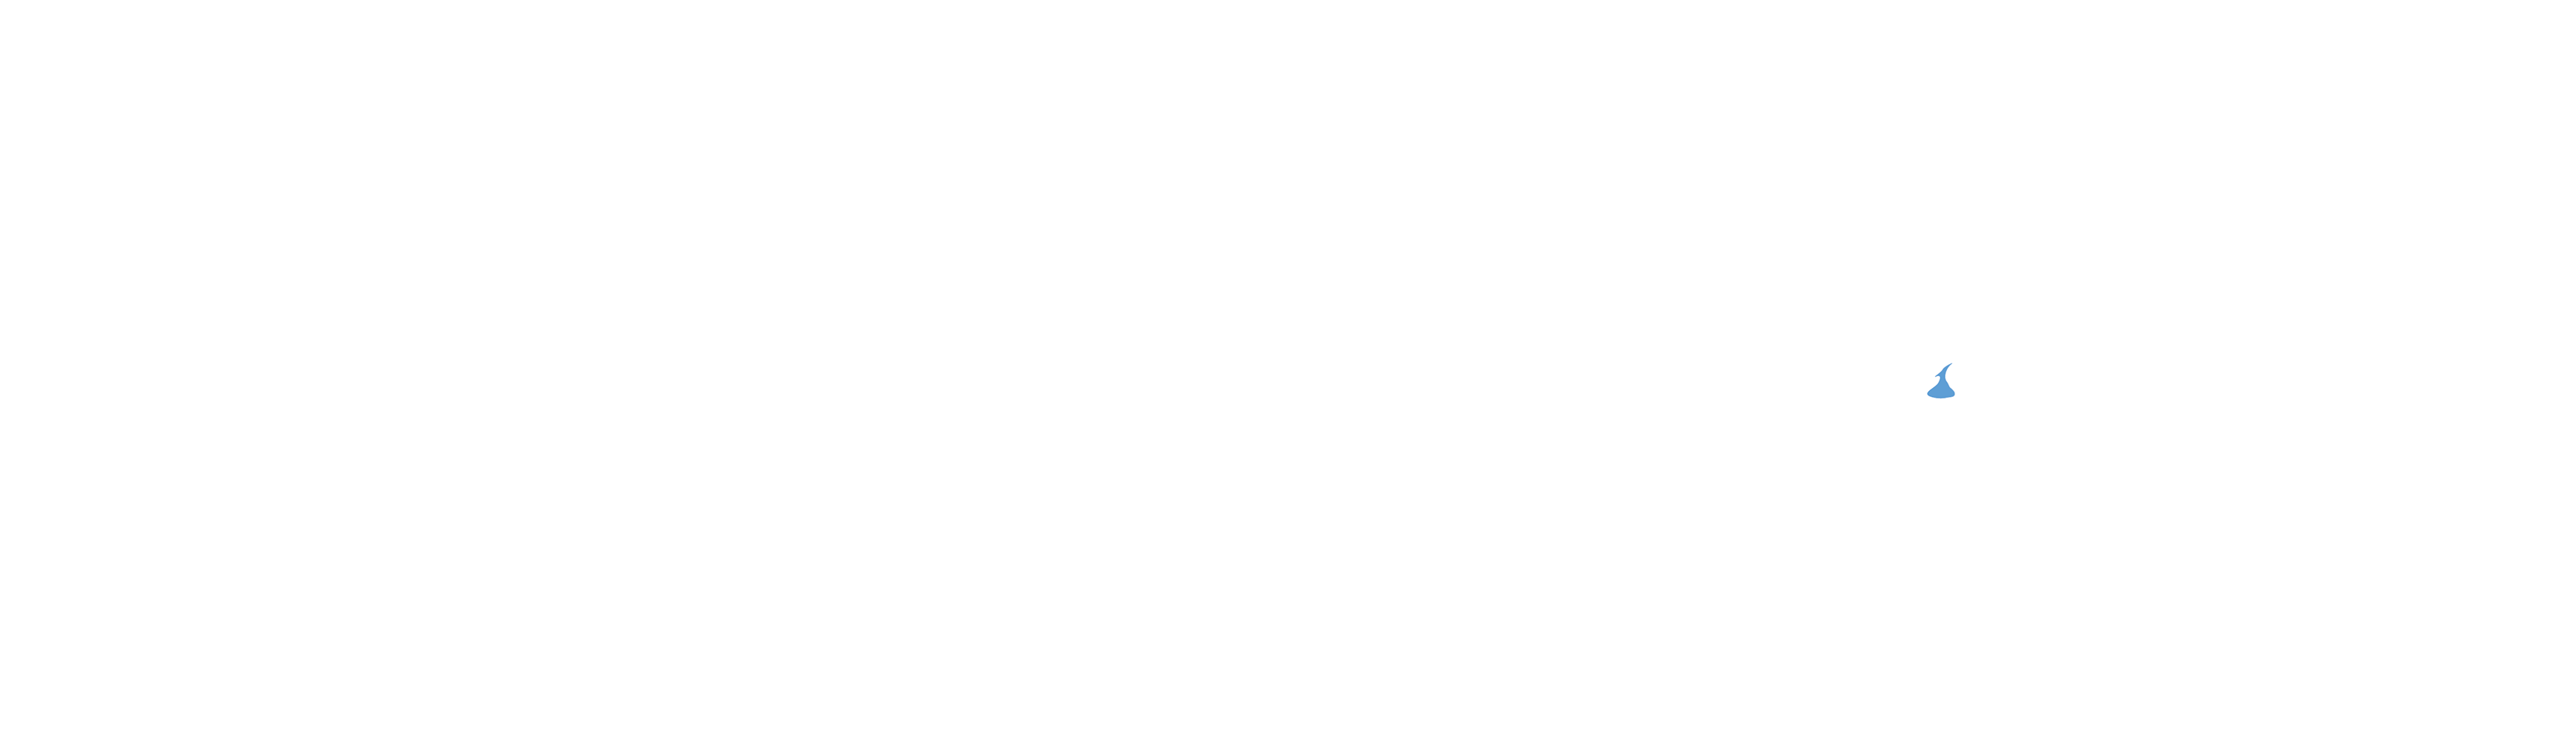 Pathe